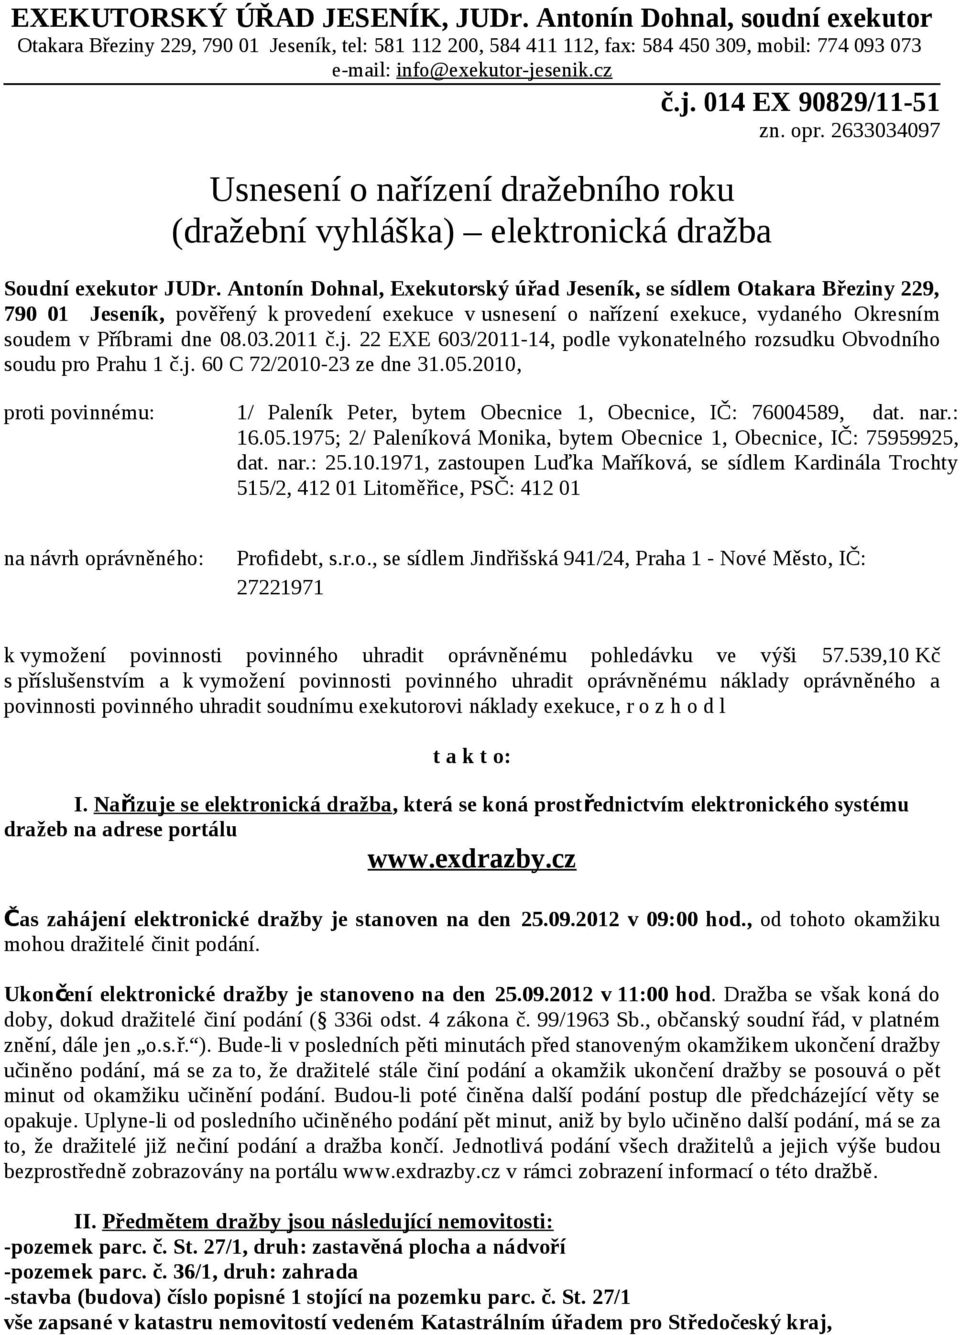 Antonín Dohnal, Exekutorský úřad Jeseník, se sídlem Otakara Březiny 229, 790 01 Jeseník, pověřený k provedení exekuce v usnesení o nařízení exekuce, vydaného Okresním soudem v Příbrami dne 08.03.